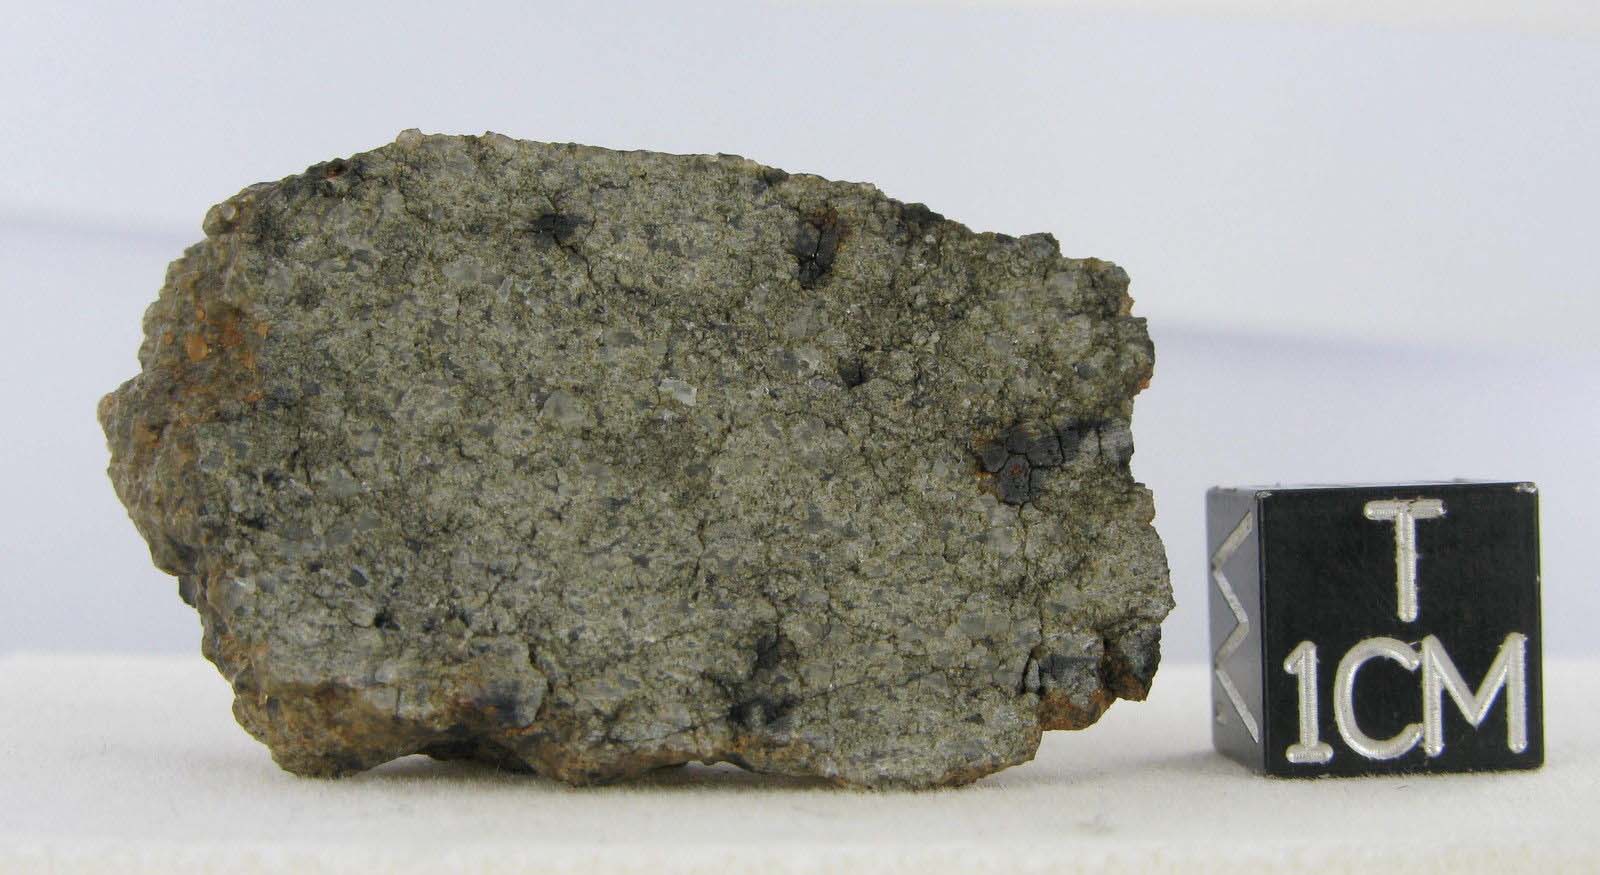 martian meteorite - NWA 2975 10.jpg